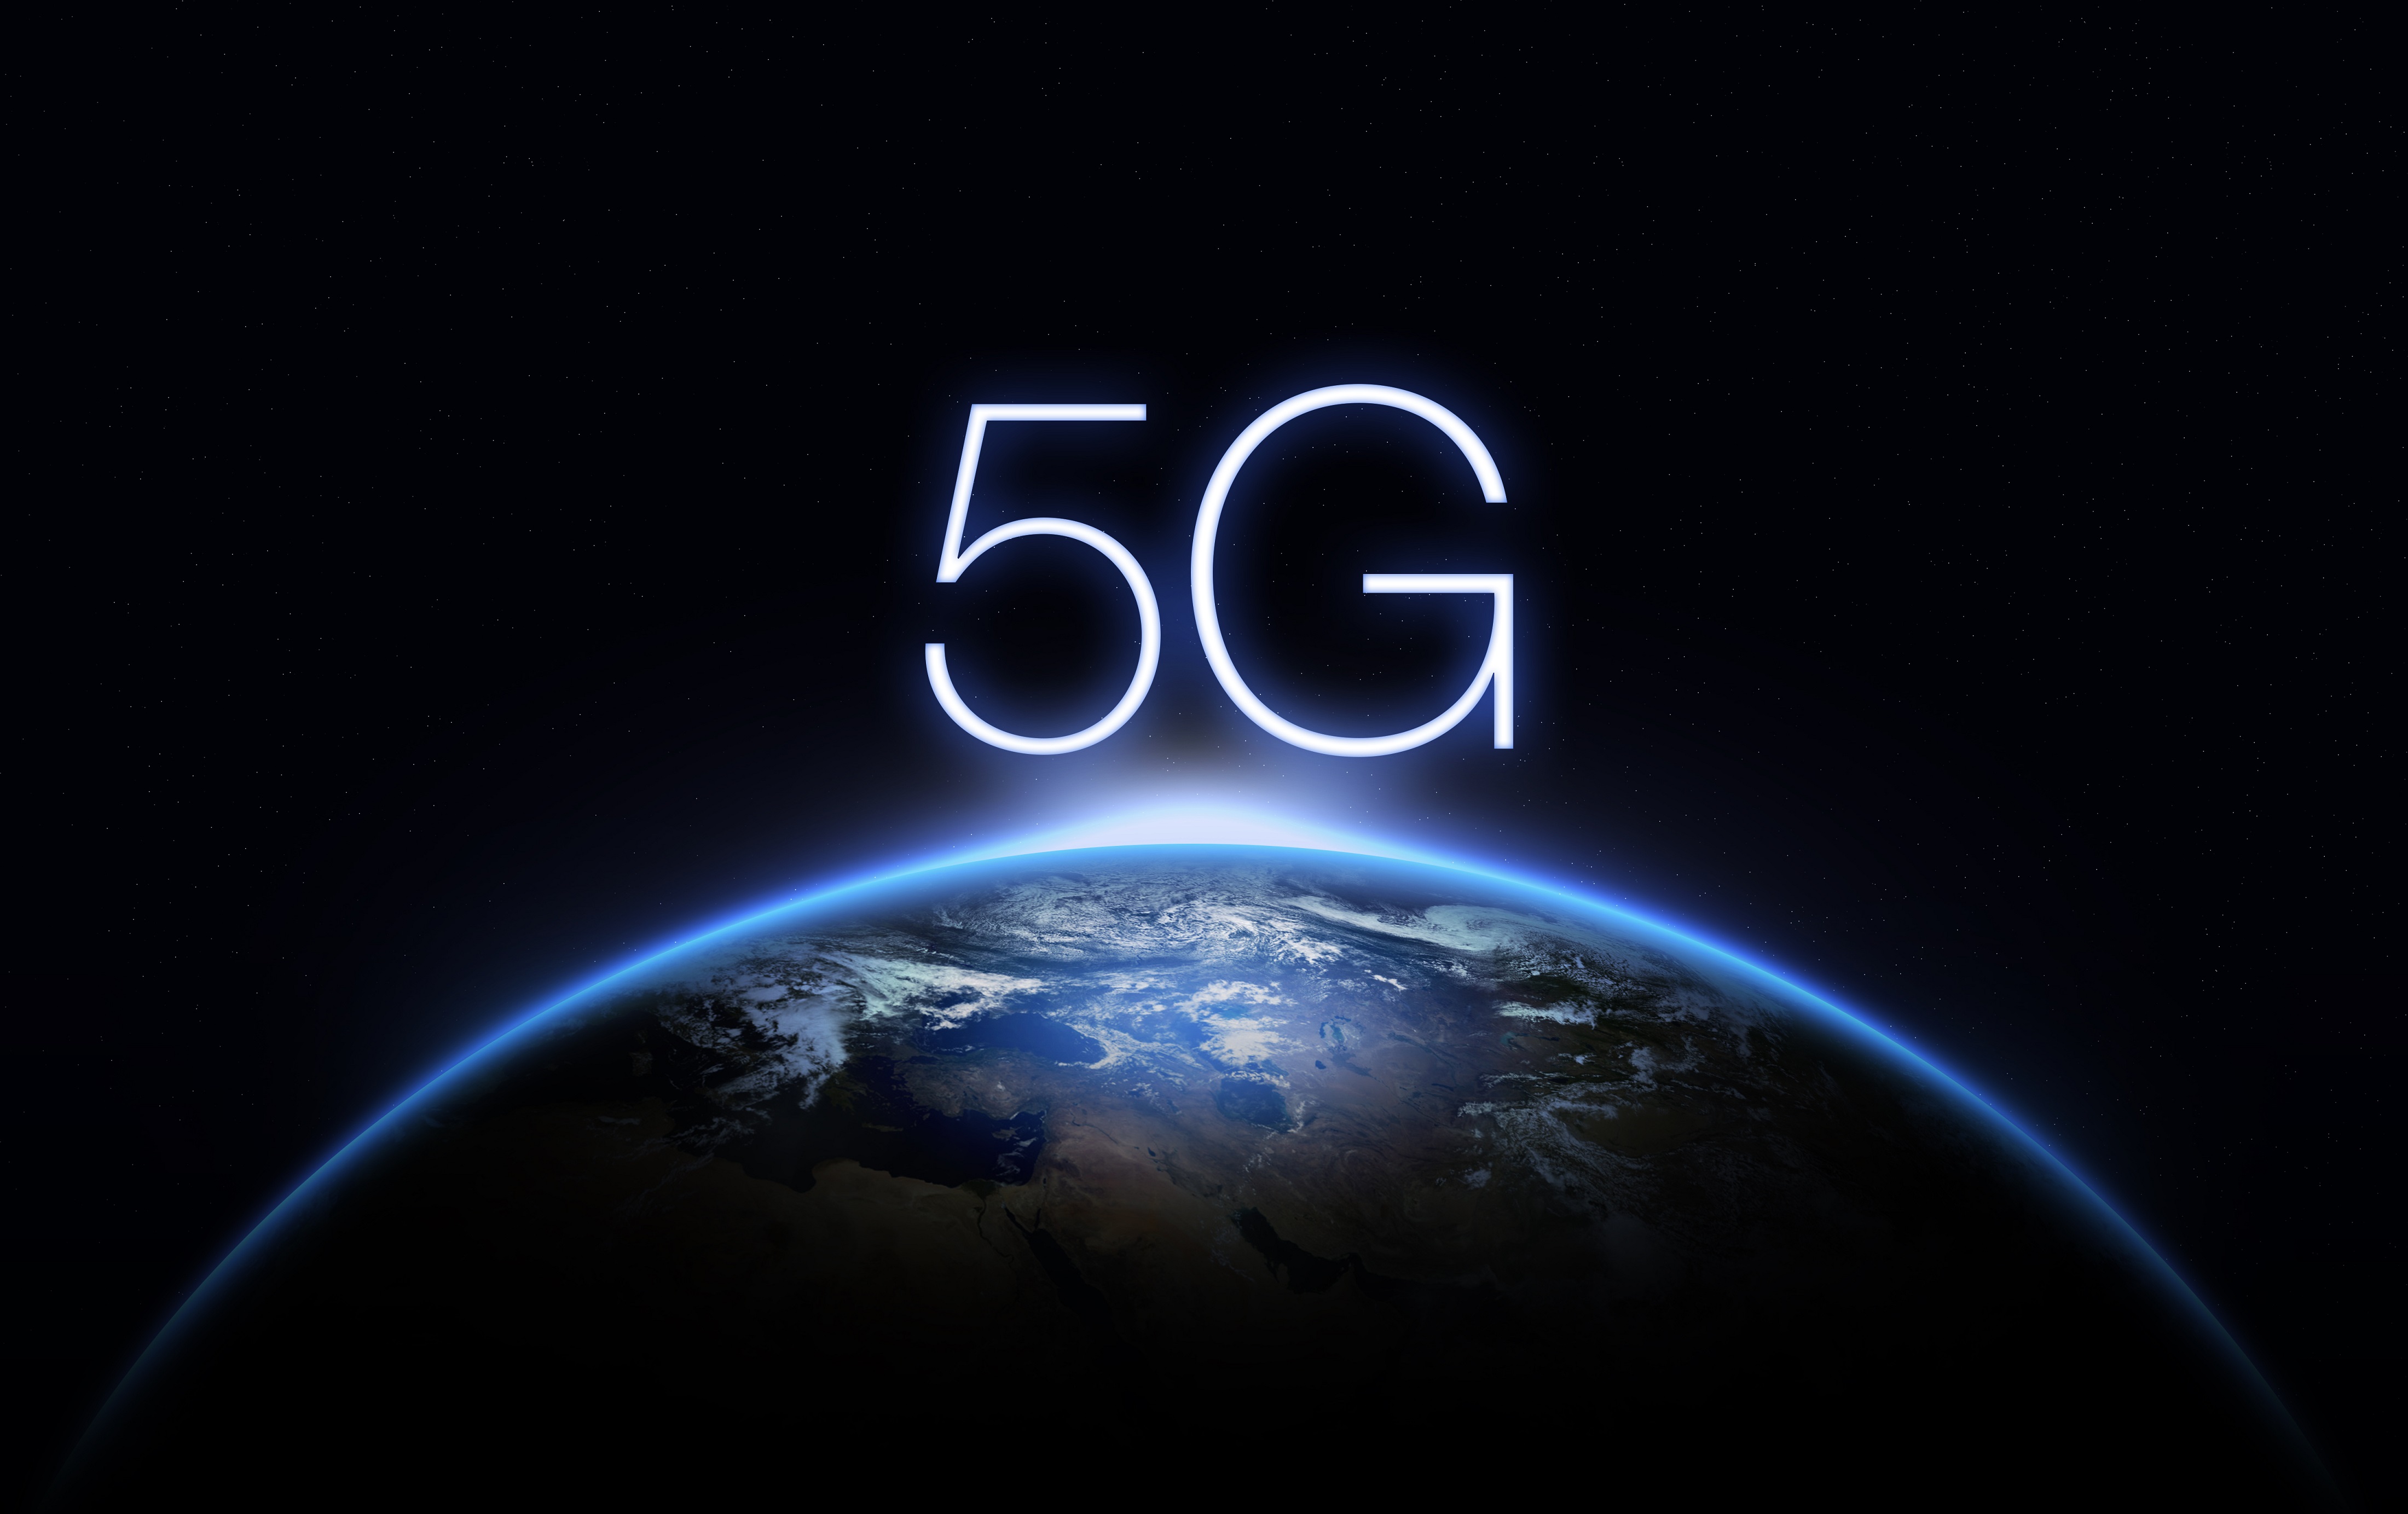 Új, 5G technológián alapuló otthoni internetszolgáltatást indított a Yettel